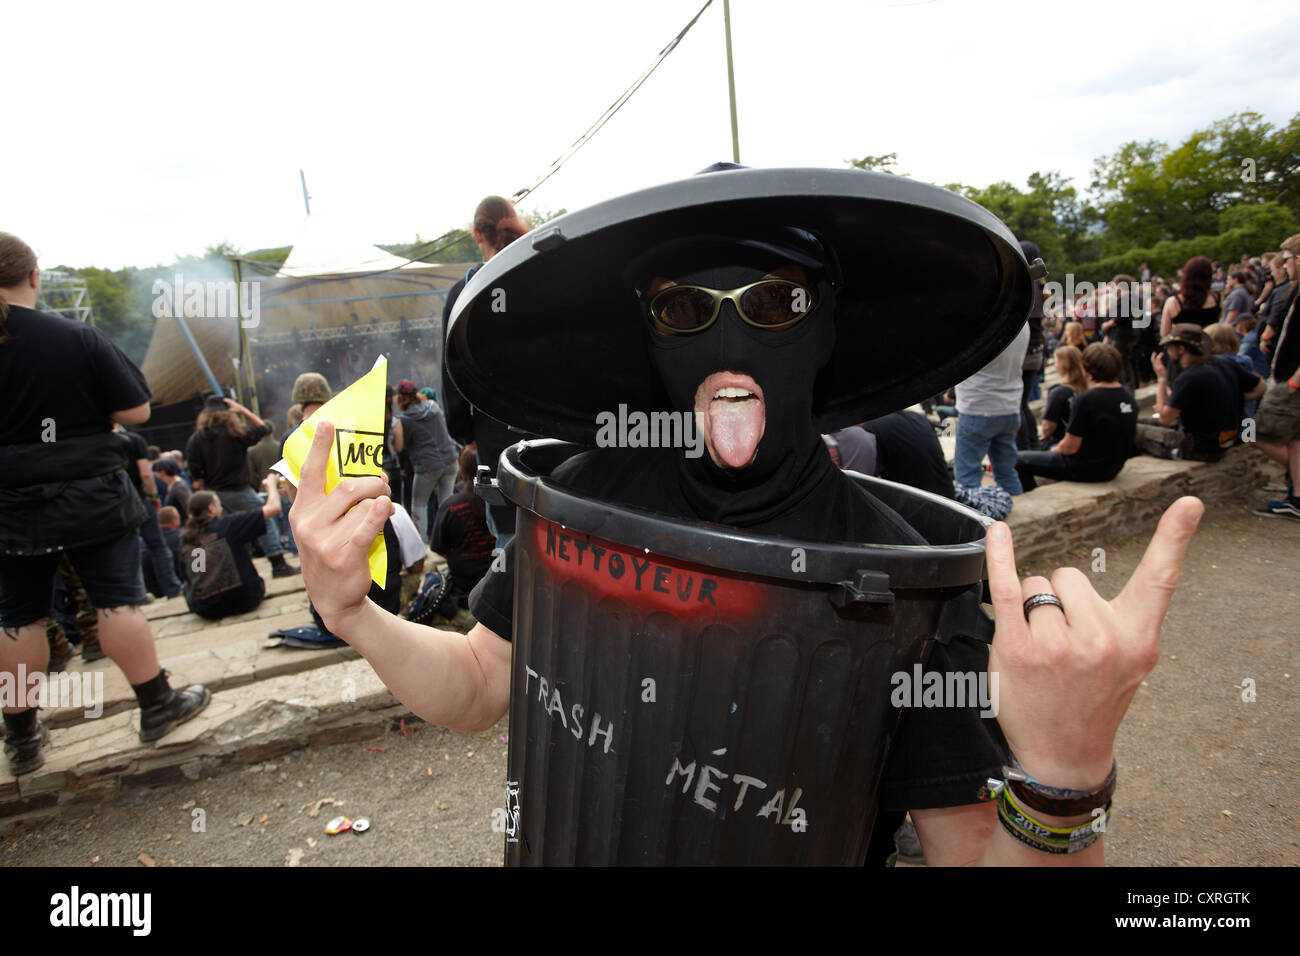 Metalfest 2012 a Loreley palcoscenico open-air festival, goer indossando un bidone della spazzatura come un cestino in metallo a corredo, San Goarshausen Foto Stock